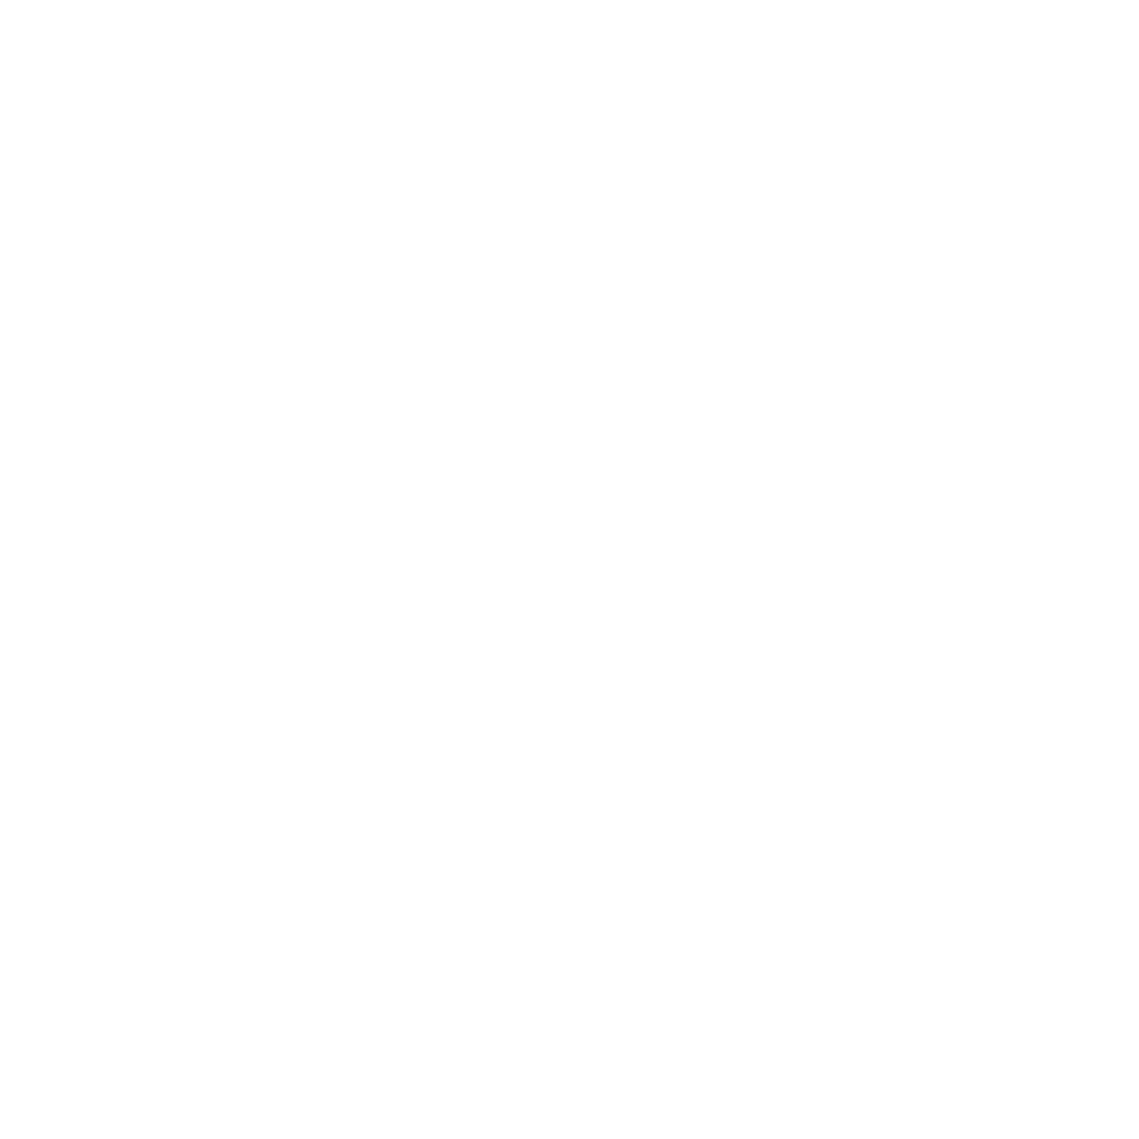 EuropeGuest